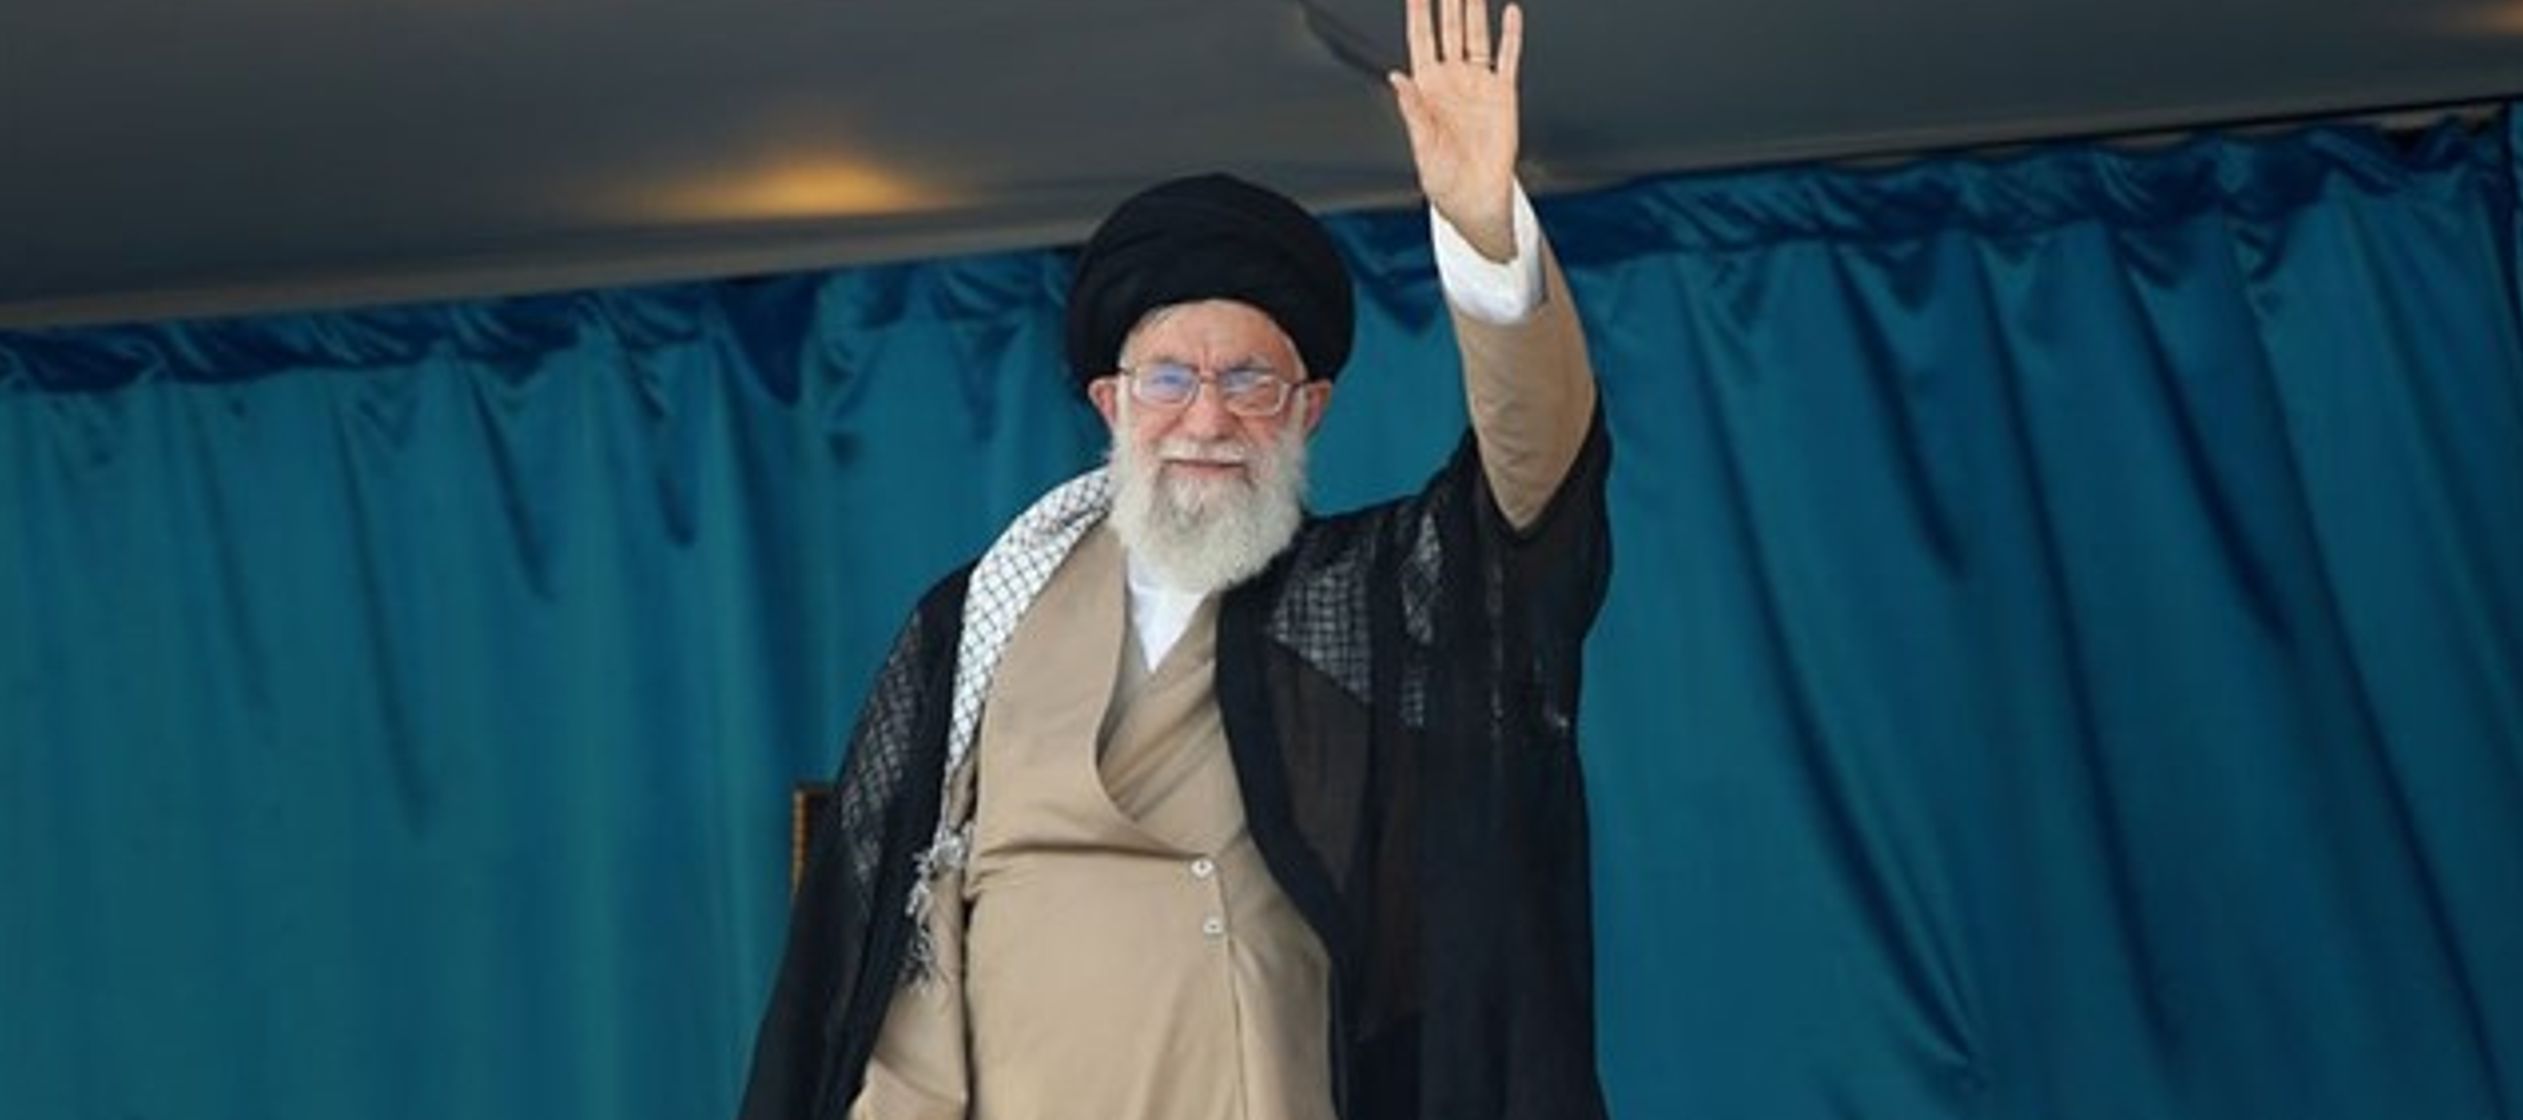 La tensión política entre Washington y Teherán se ha disparado a raíz...